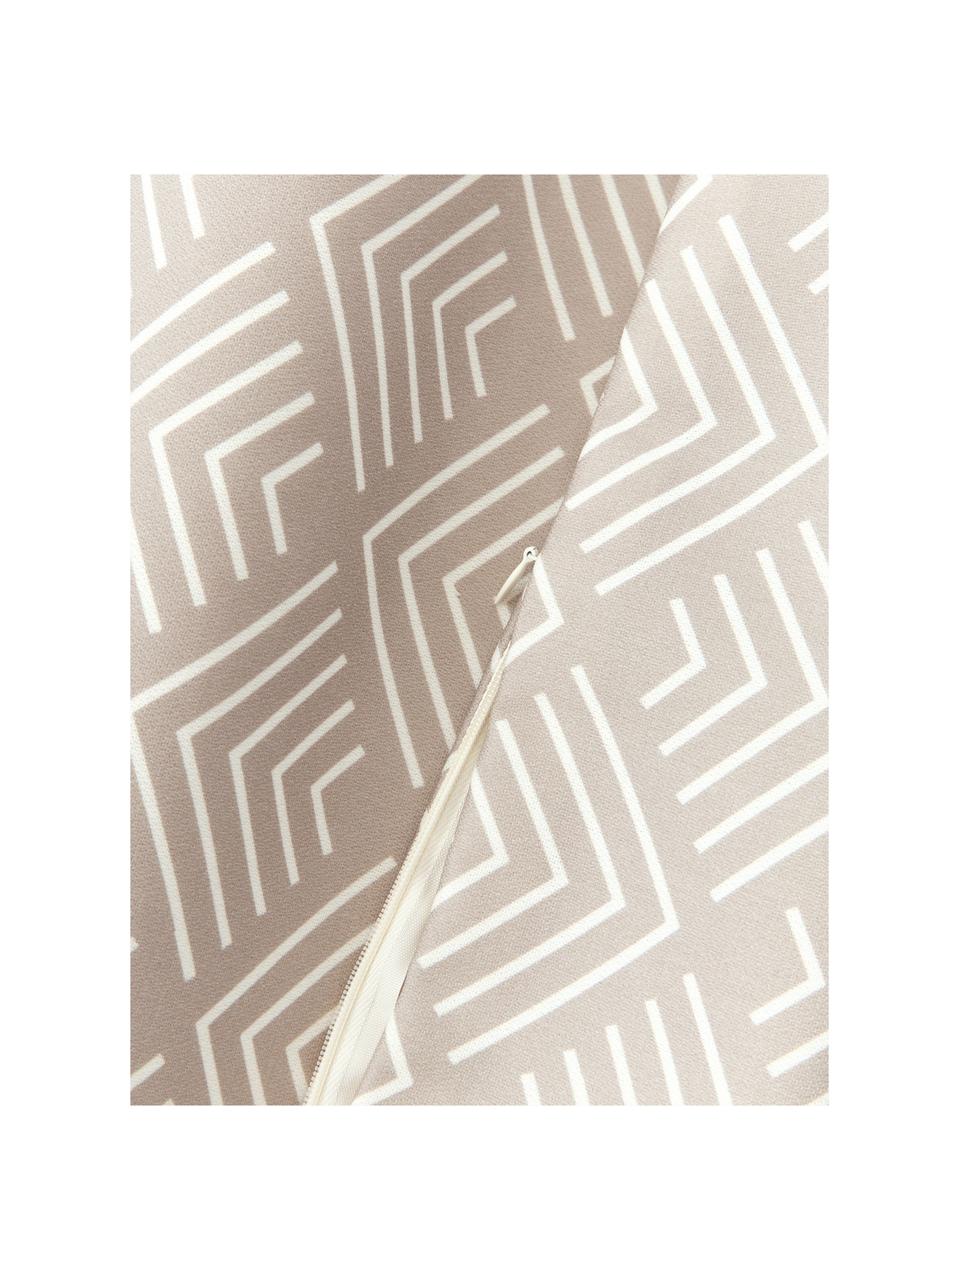 Housse de coussin 40x40 avec motif graphique Milano, 100 % polyacrylique

Le matériau est certifié STANDARD 100 OEKO-TEX®, 2016OKO494, AITEX, Beige, blanc, larg. 40 x long. 40 cm